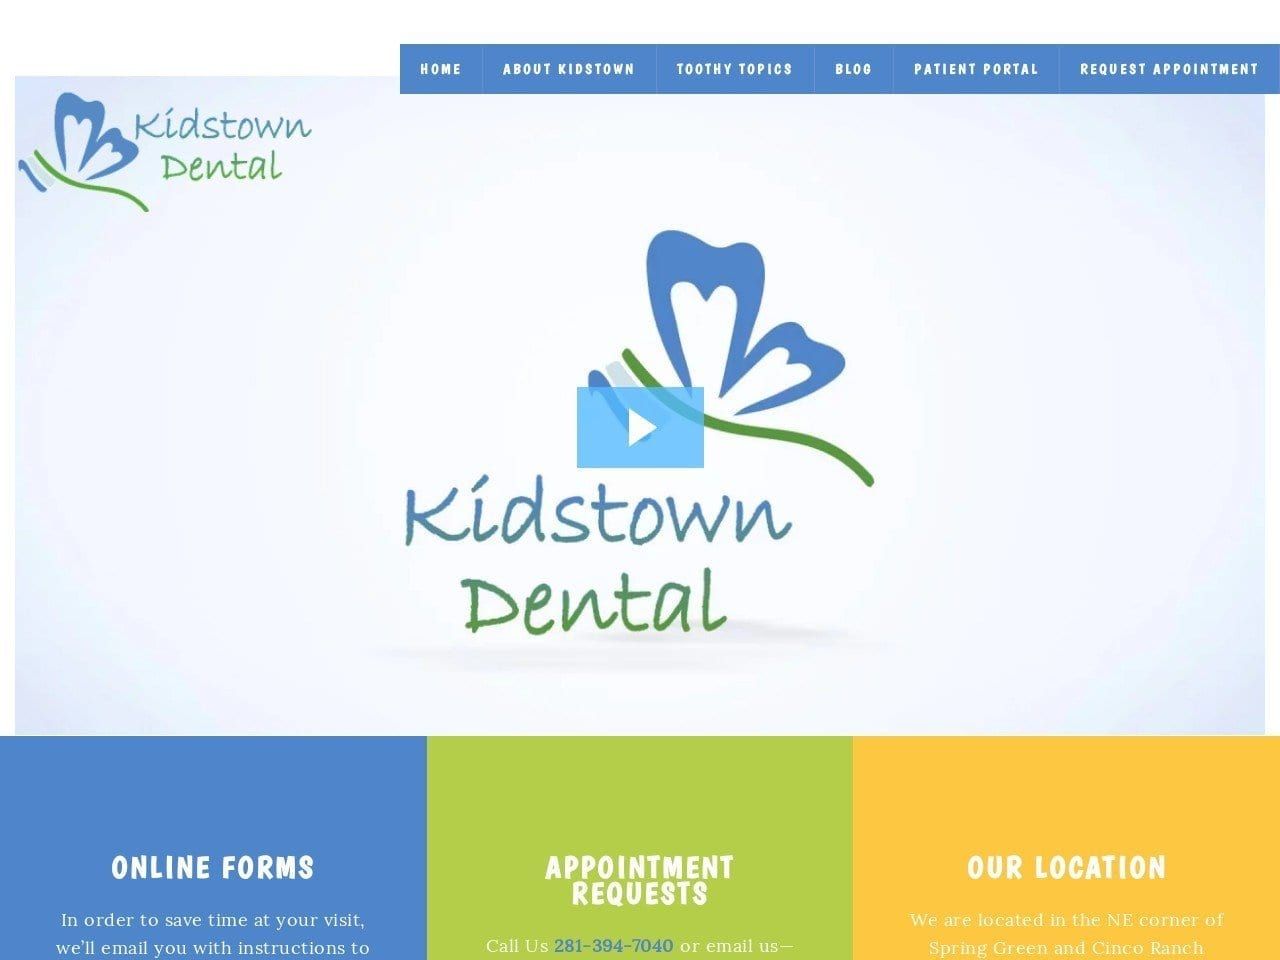 Kidstown Dental Website Screenshot from kidstowndentist.com